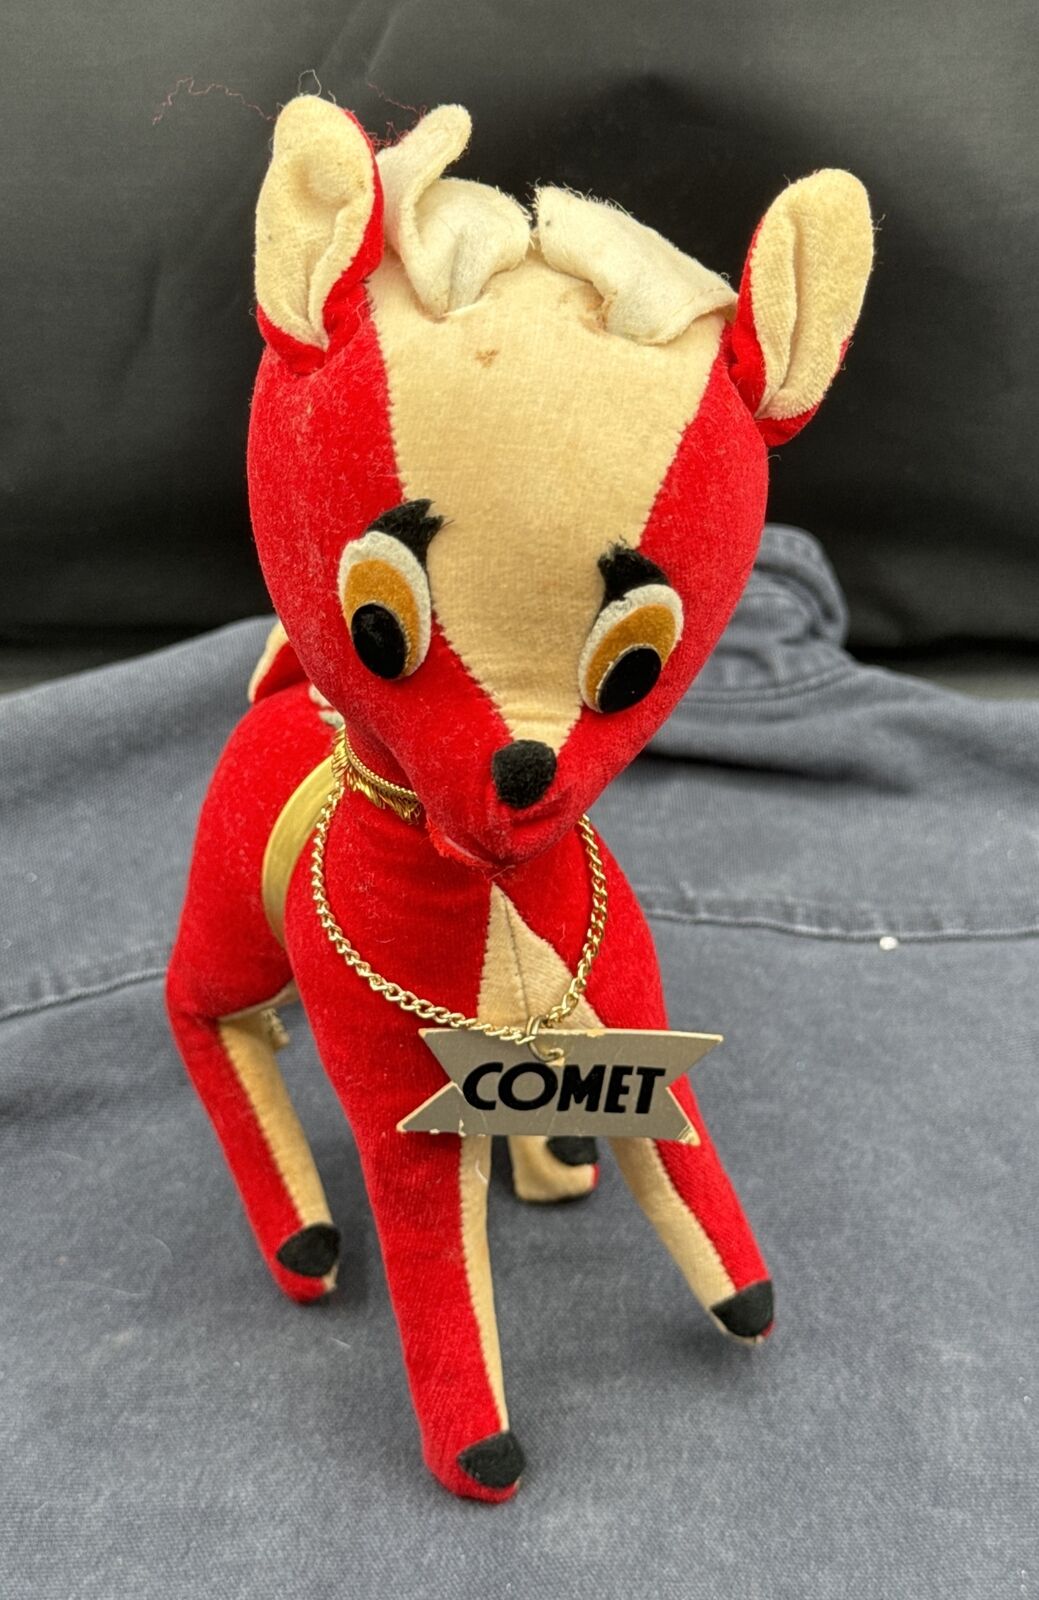 Morsly 1950's Vintage Comet Reindeer Stuffed Toy AS IS